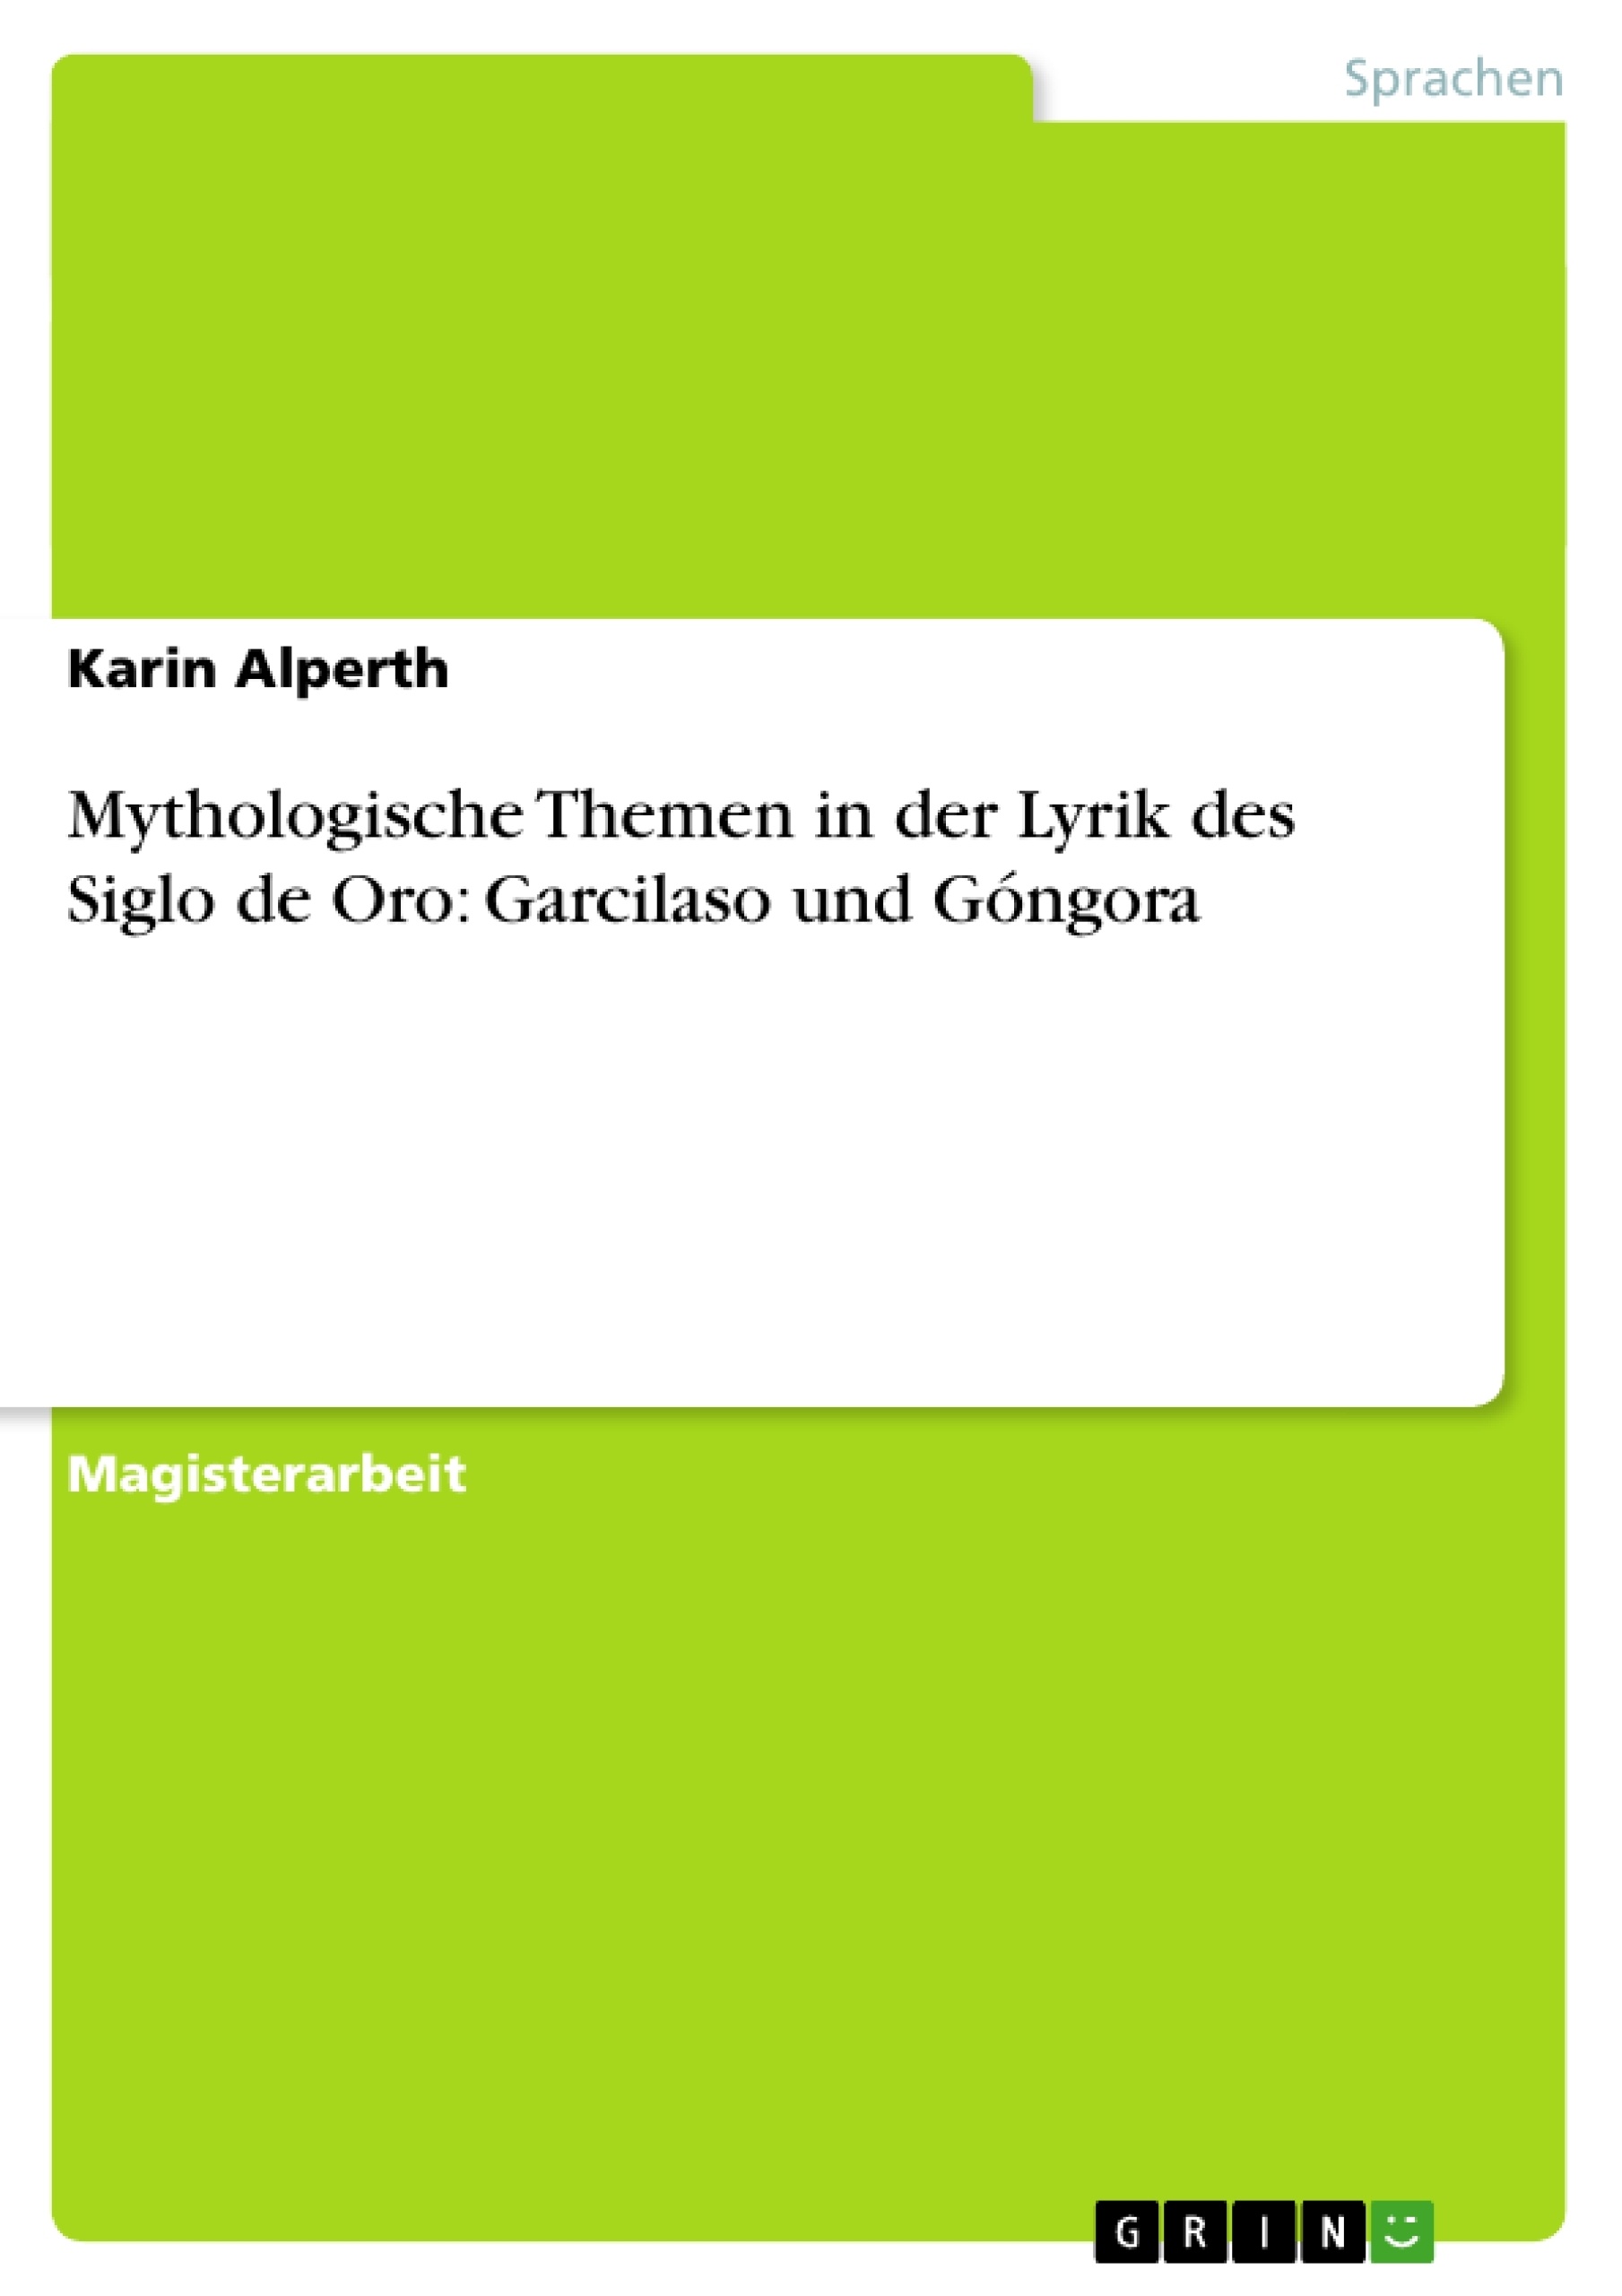 Title: Mythologische Themen in der Lyrik des Siglo de Oro: Garcilaso und Góngora